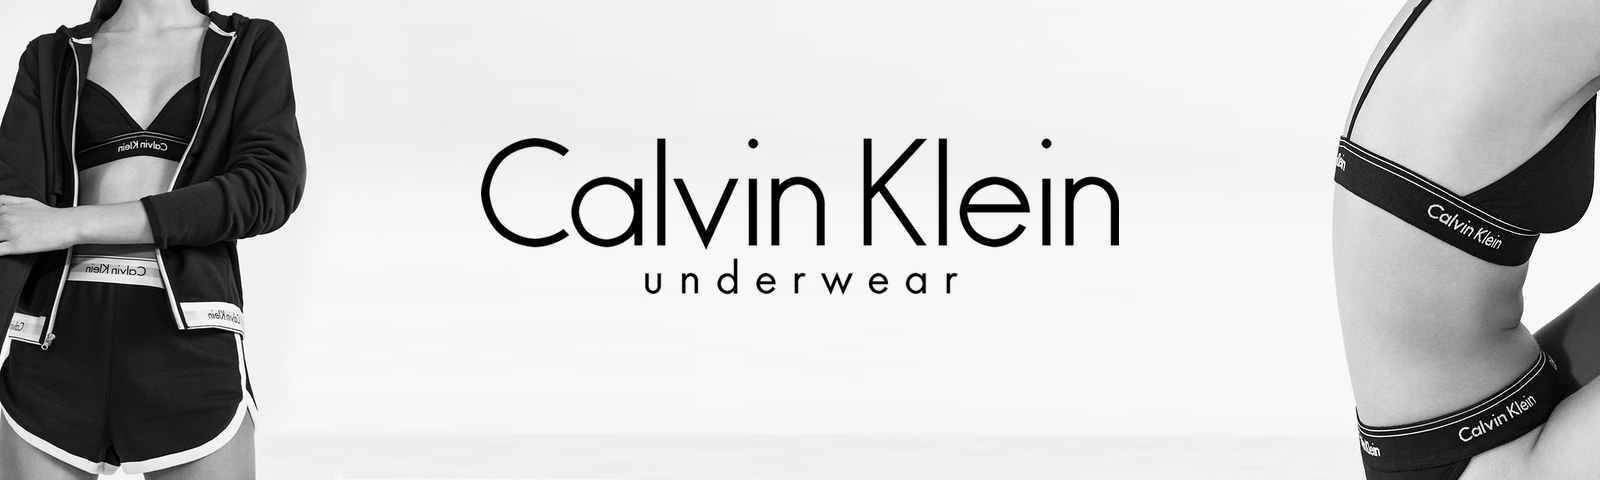 Køb Calvin klein undertøj badetøj til piger samt kvinder online